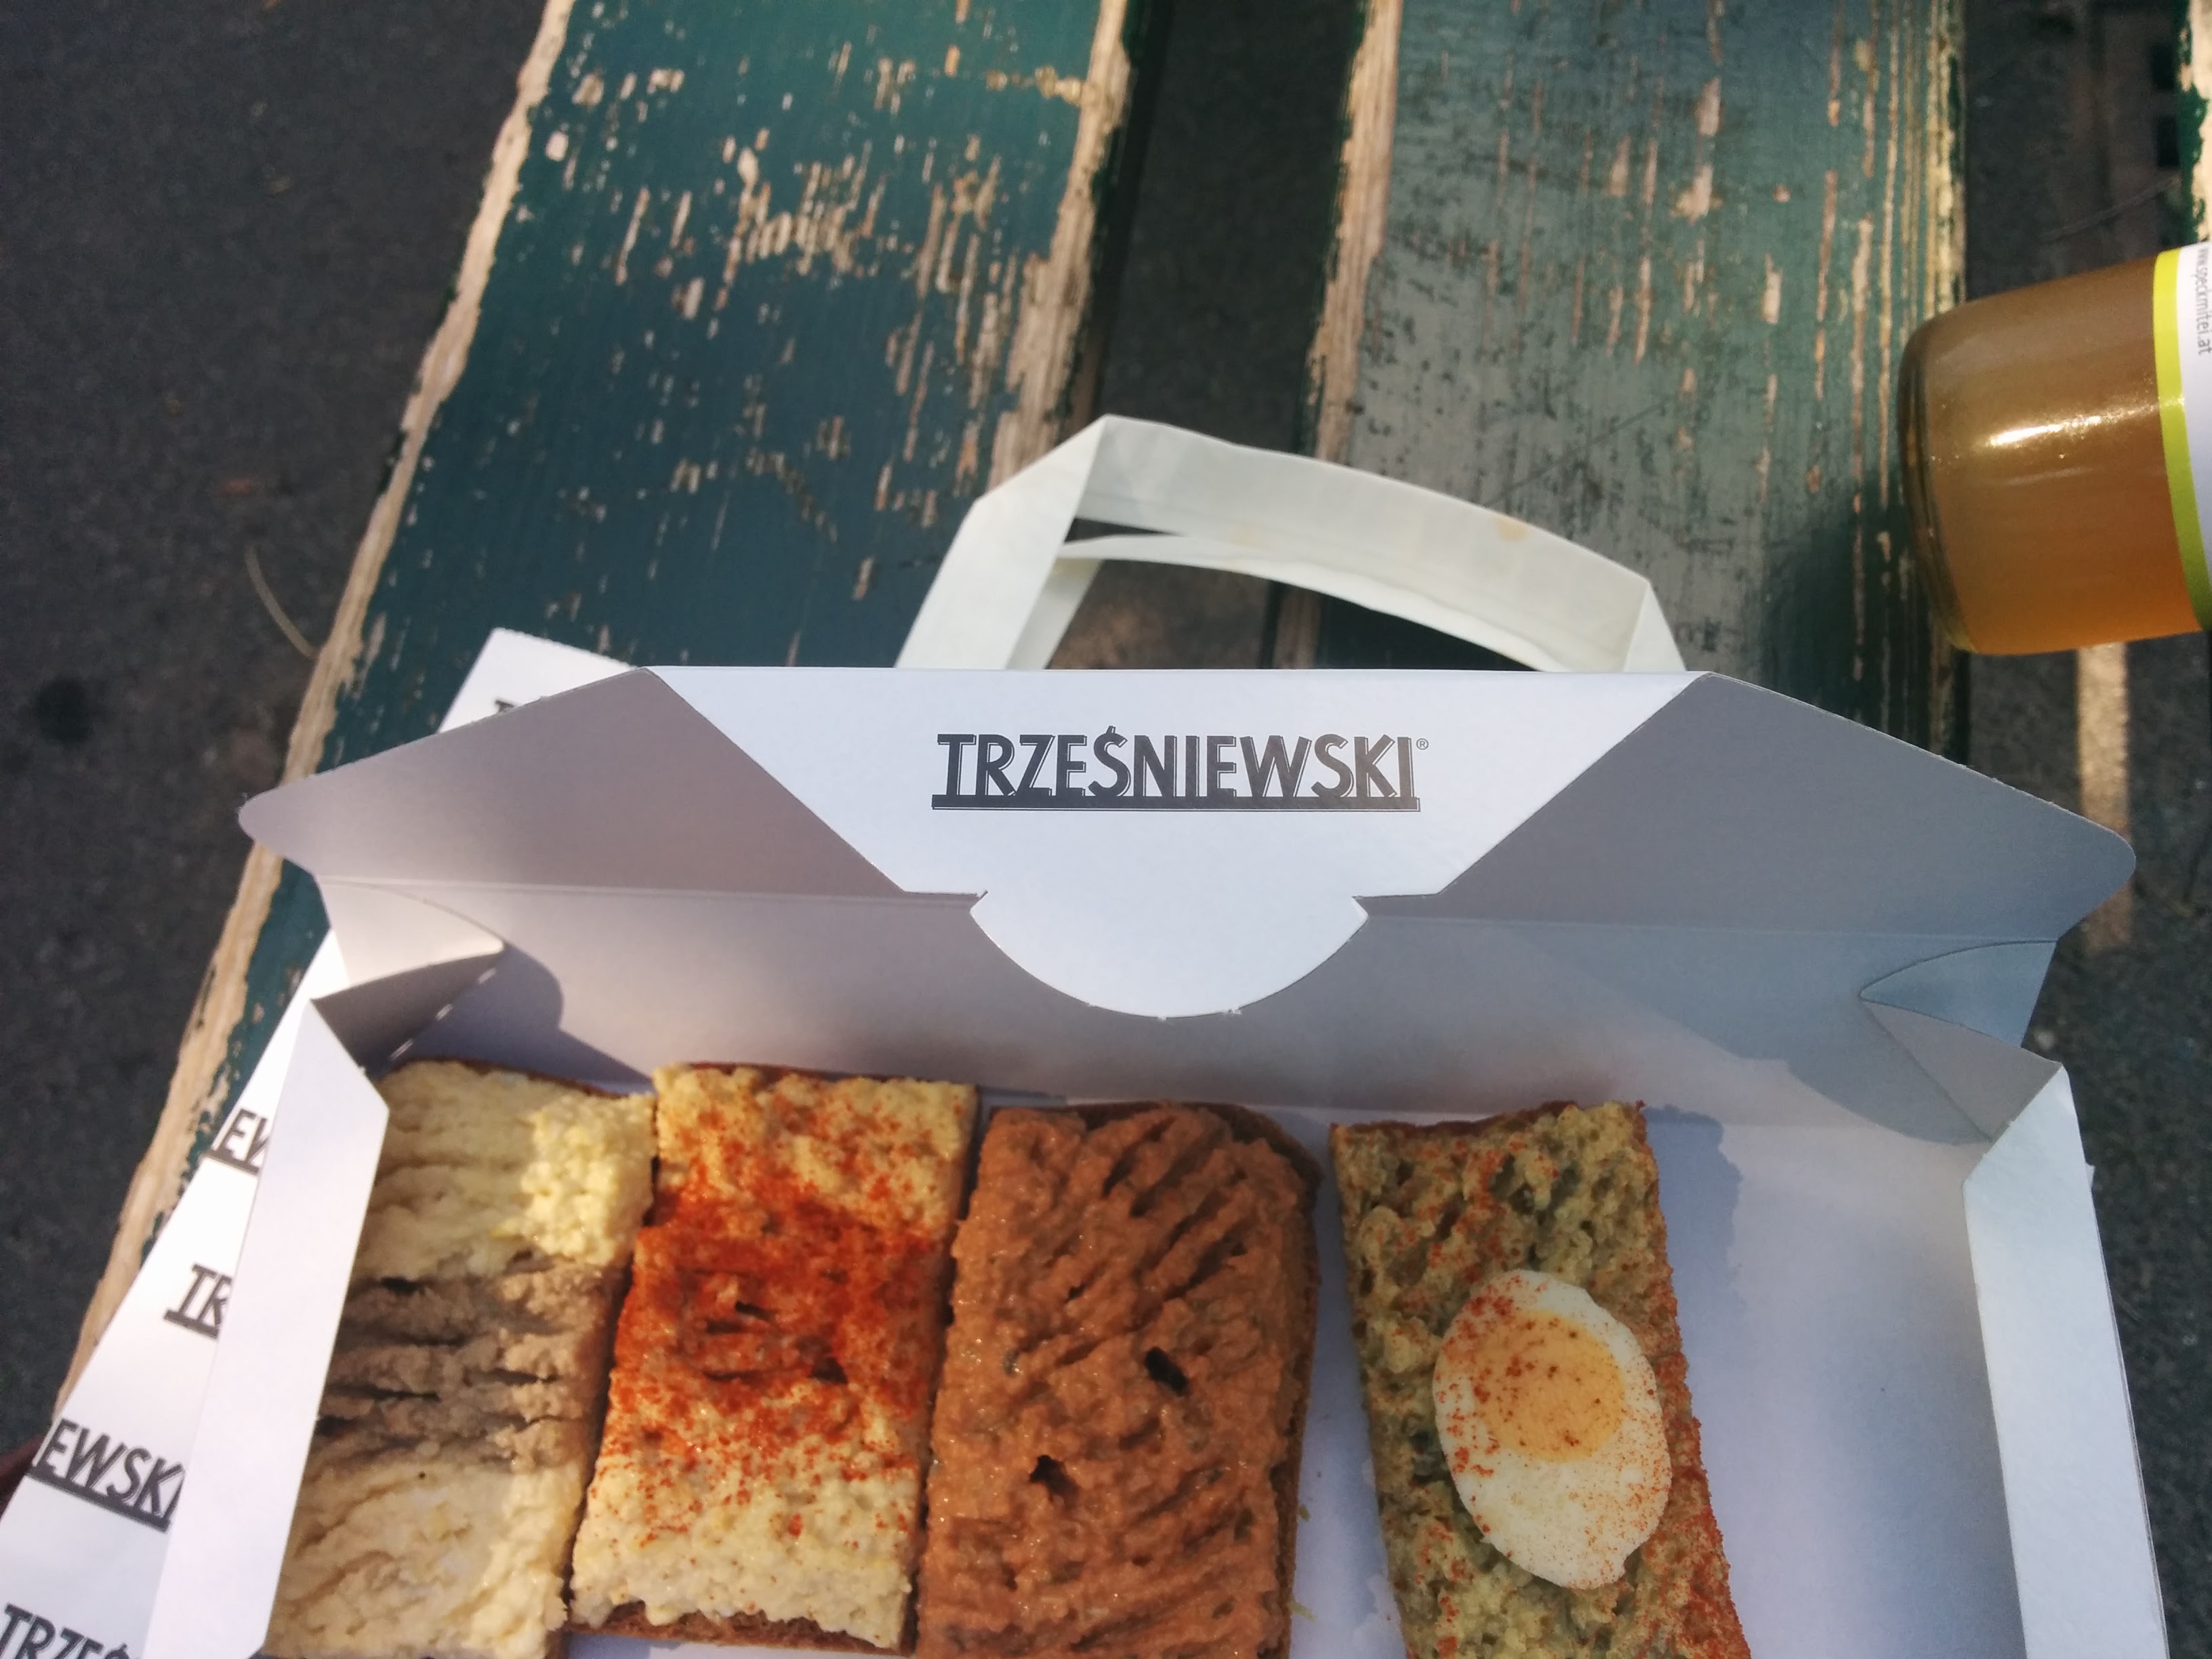 Trzesniewski’s sandwiches